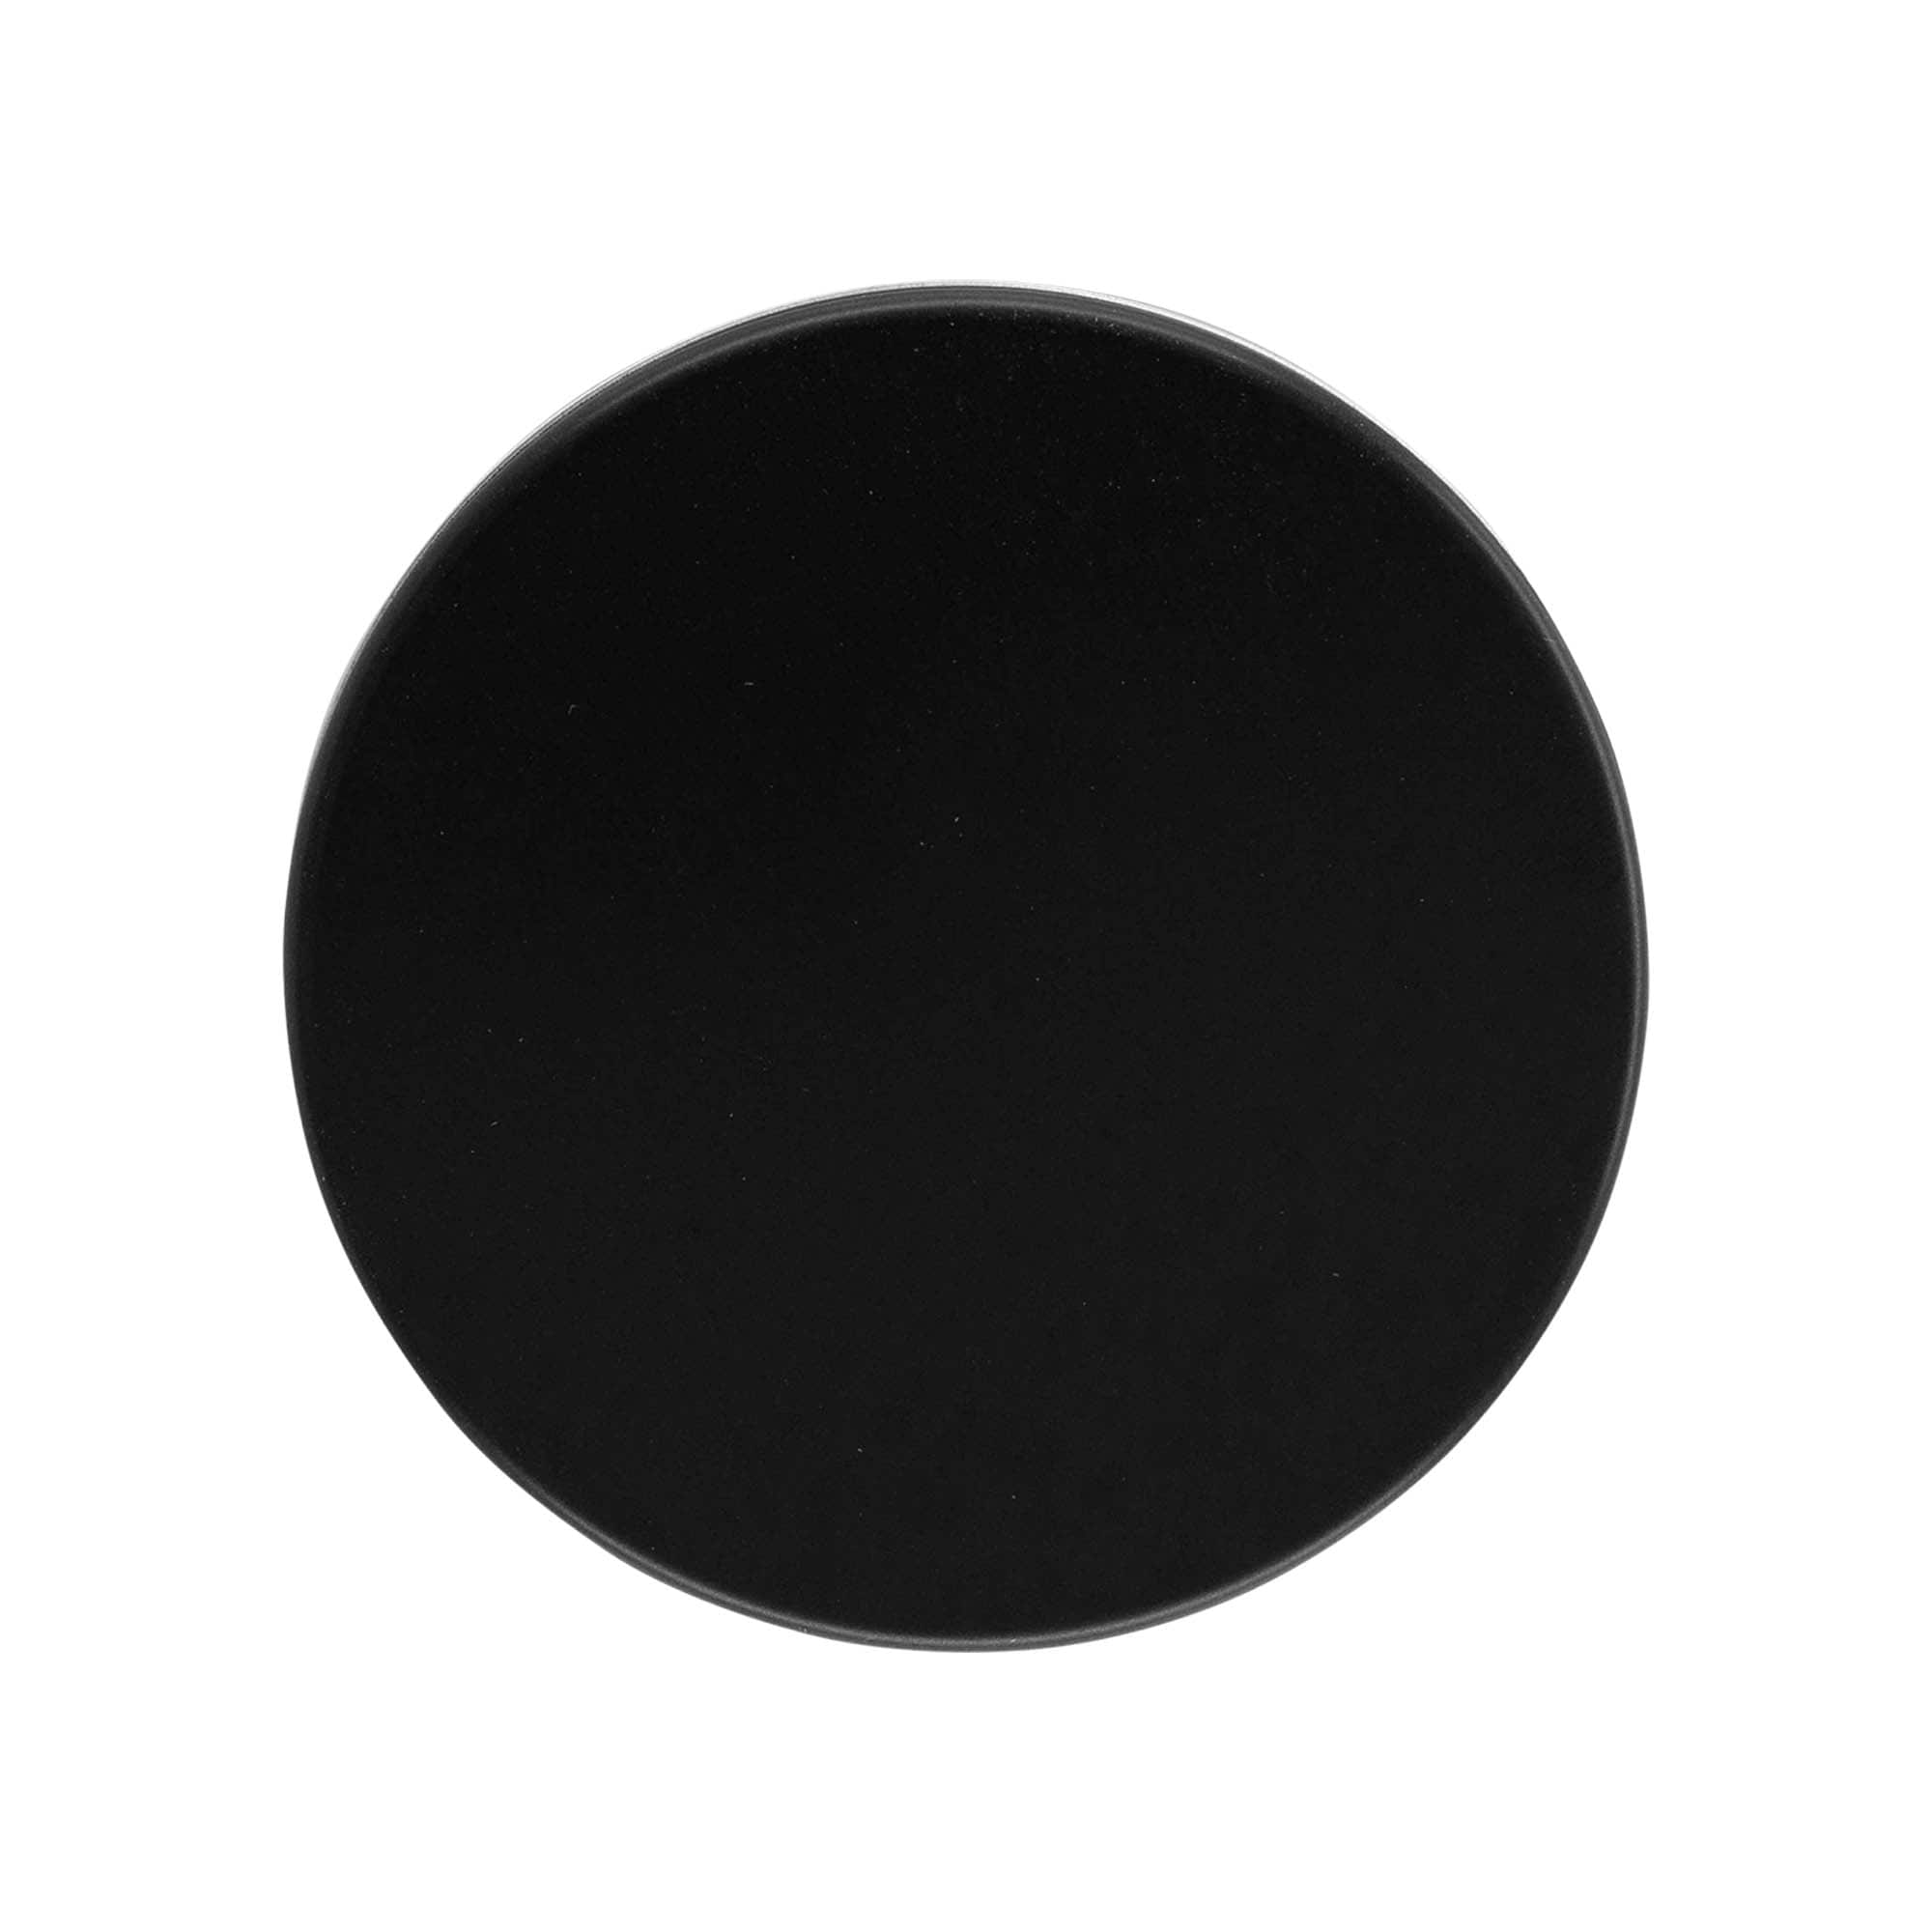 Zakrętka, metal, kolor czarny, do zamknięcia: GPI 70/400